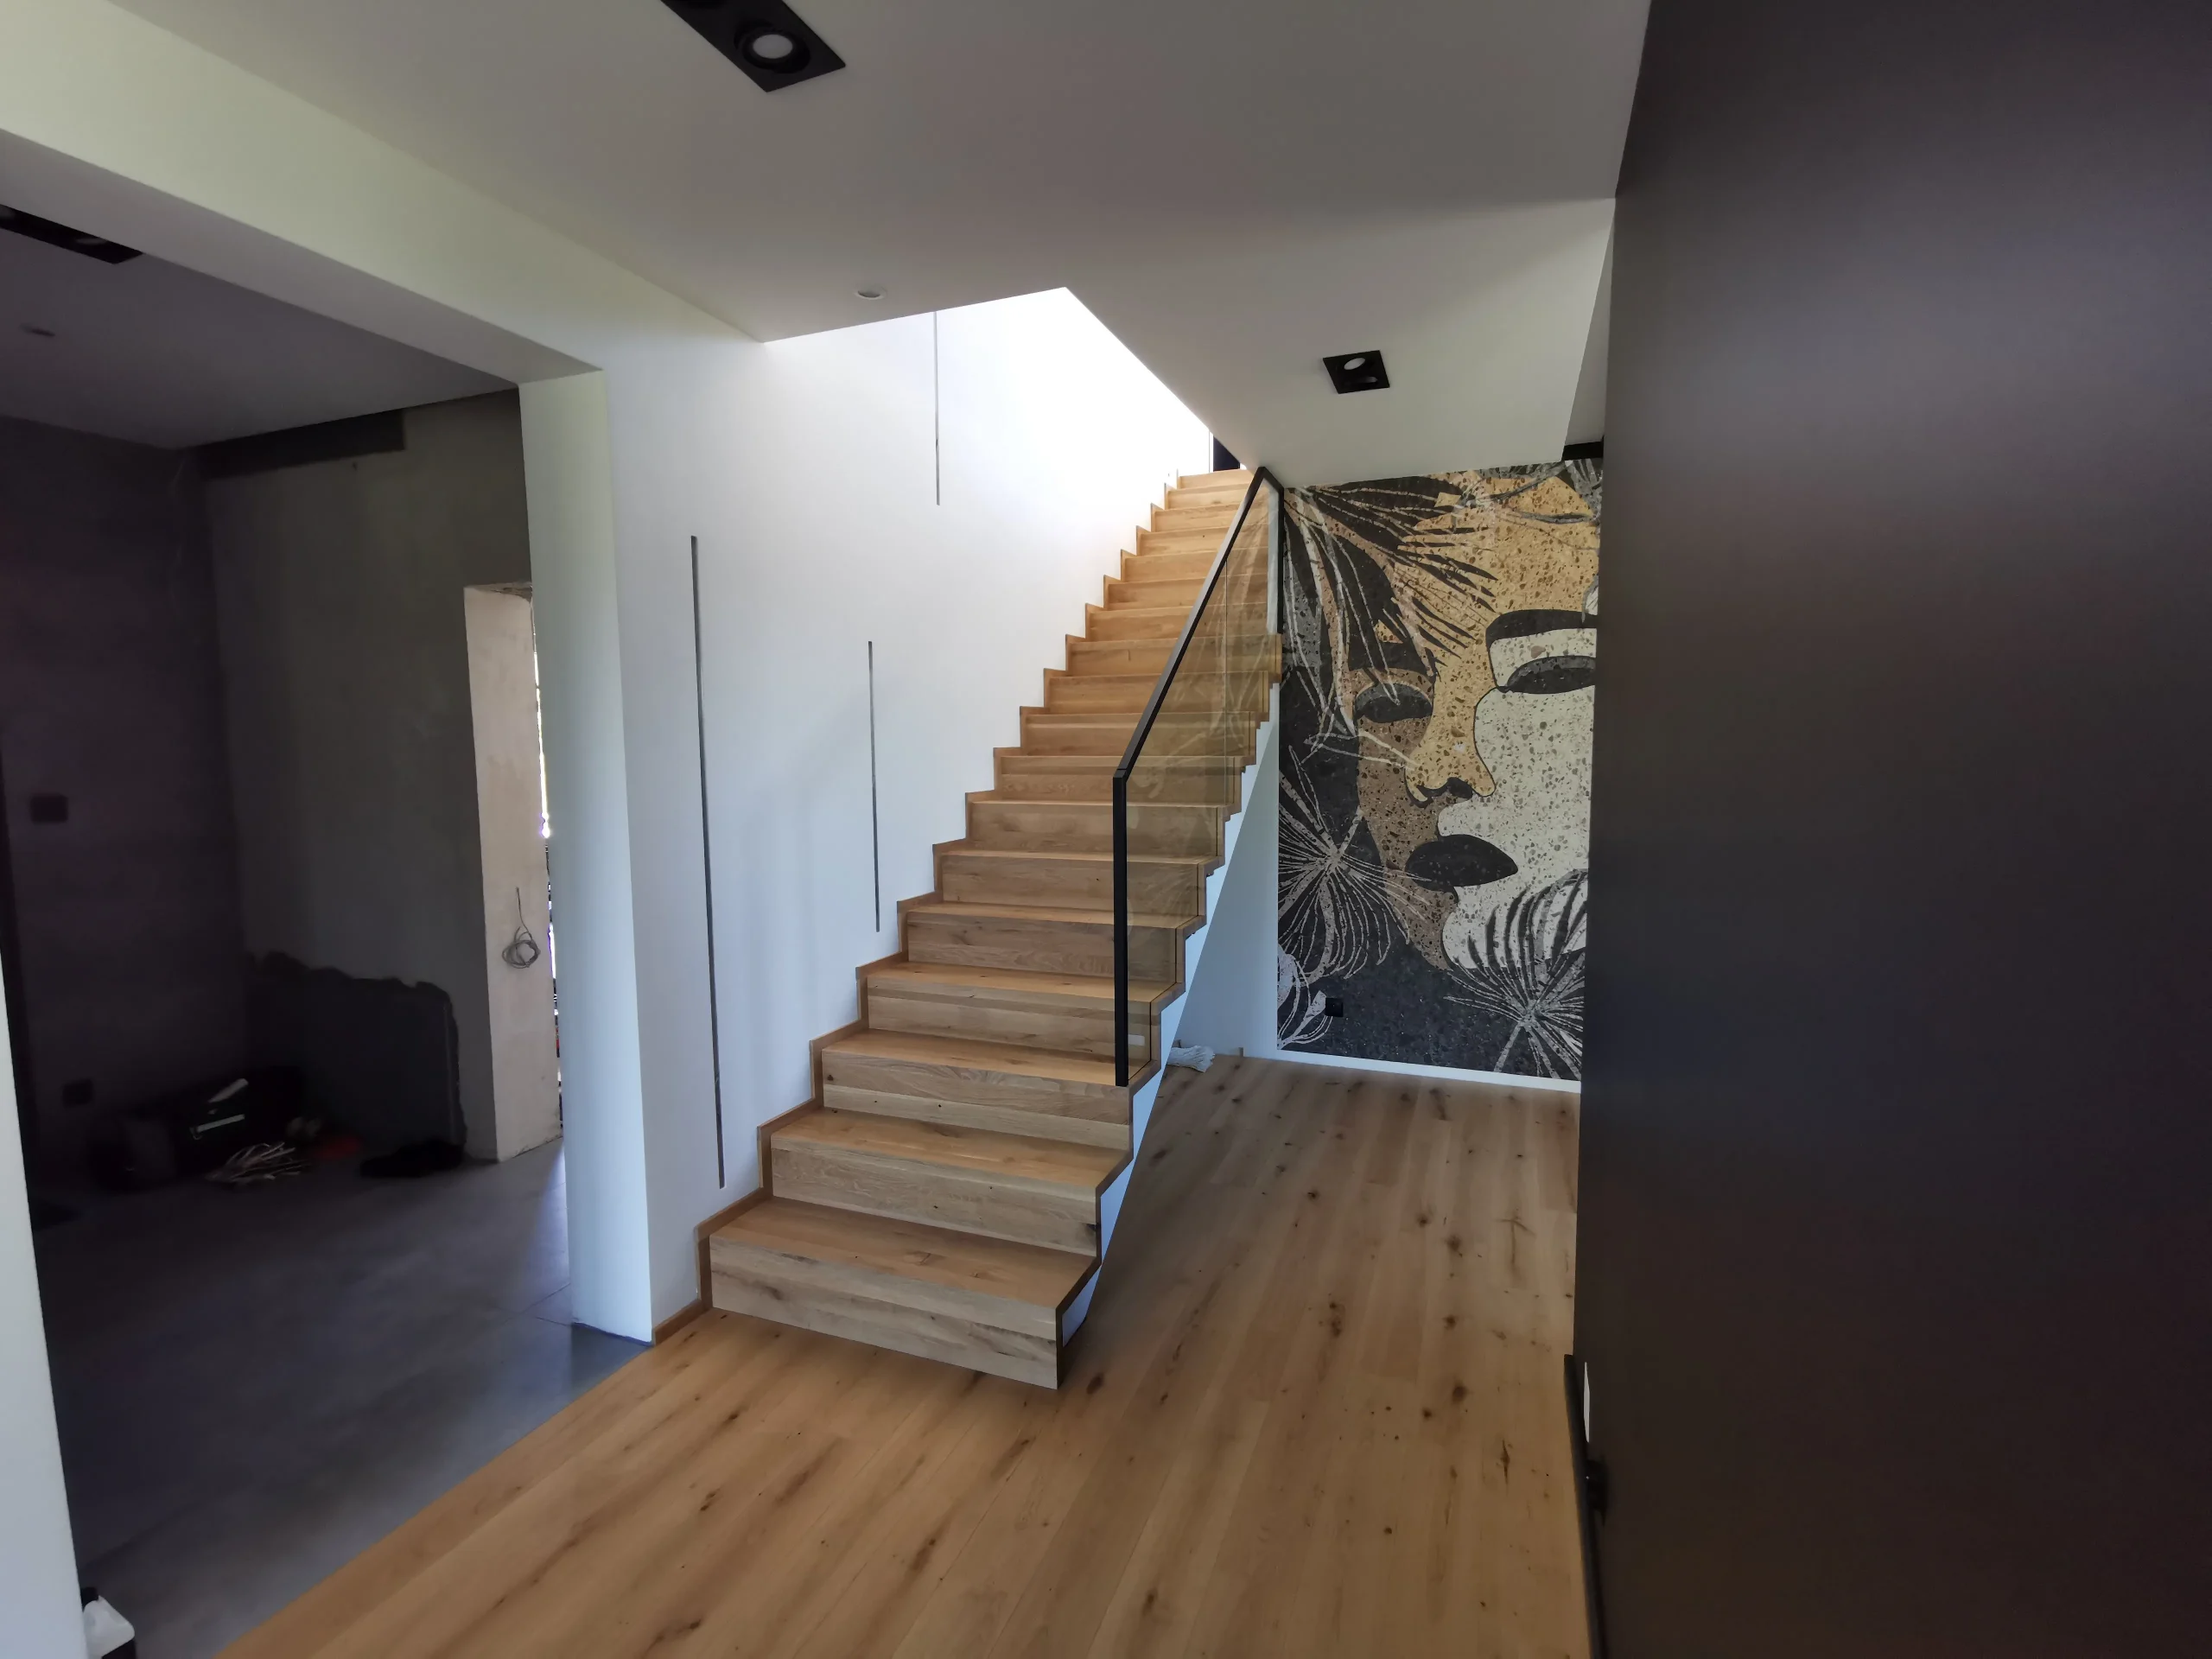 schody dywanowe na beton z balustradą szklaną